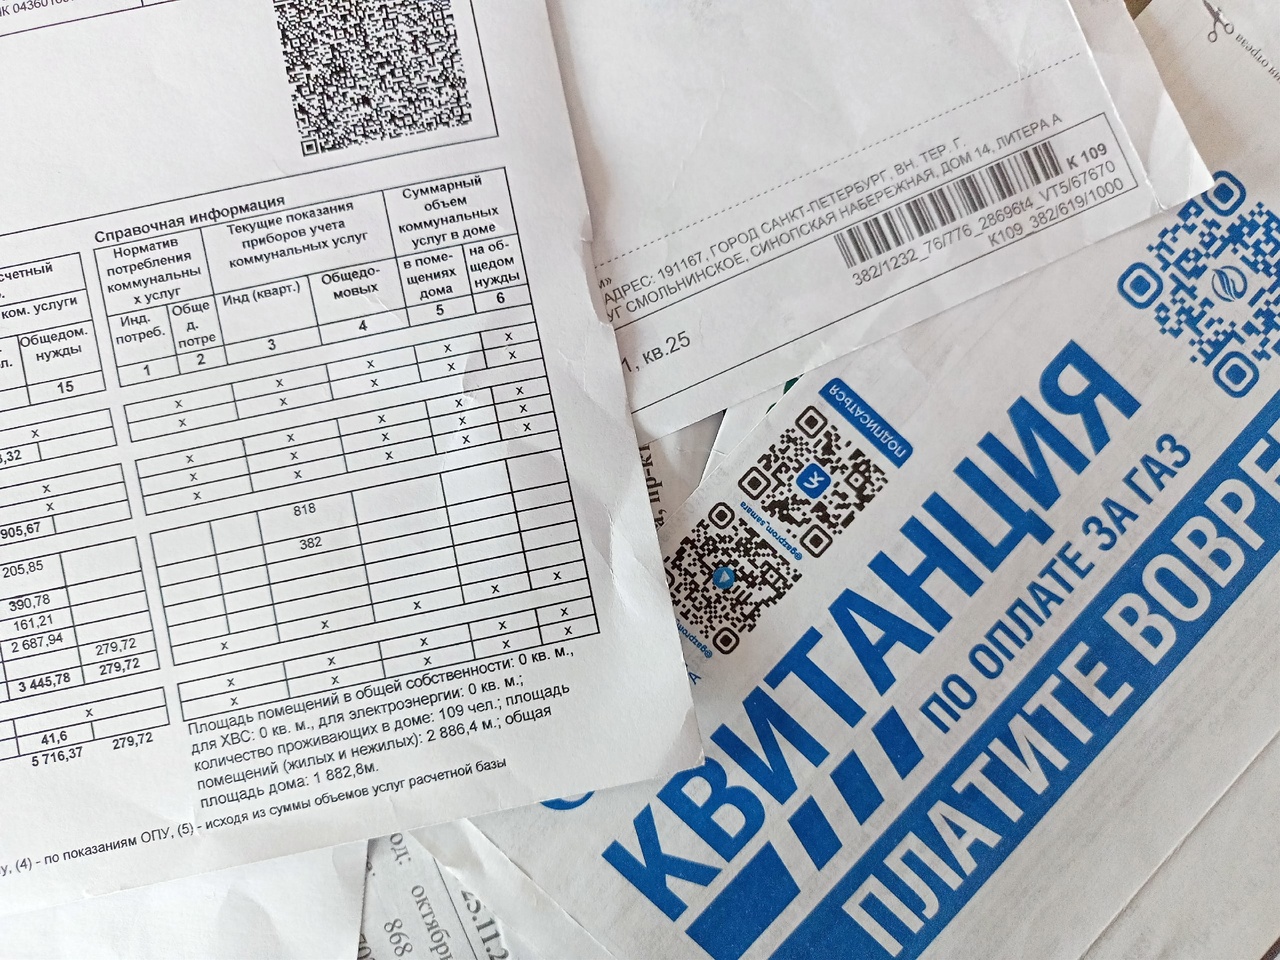  Уже завтра цены на ЖКХ резко взлетят - россияне увидят новые цифры в новых квитанциях 